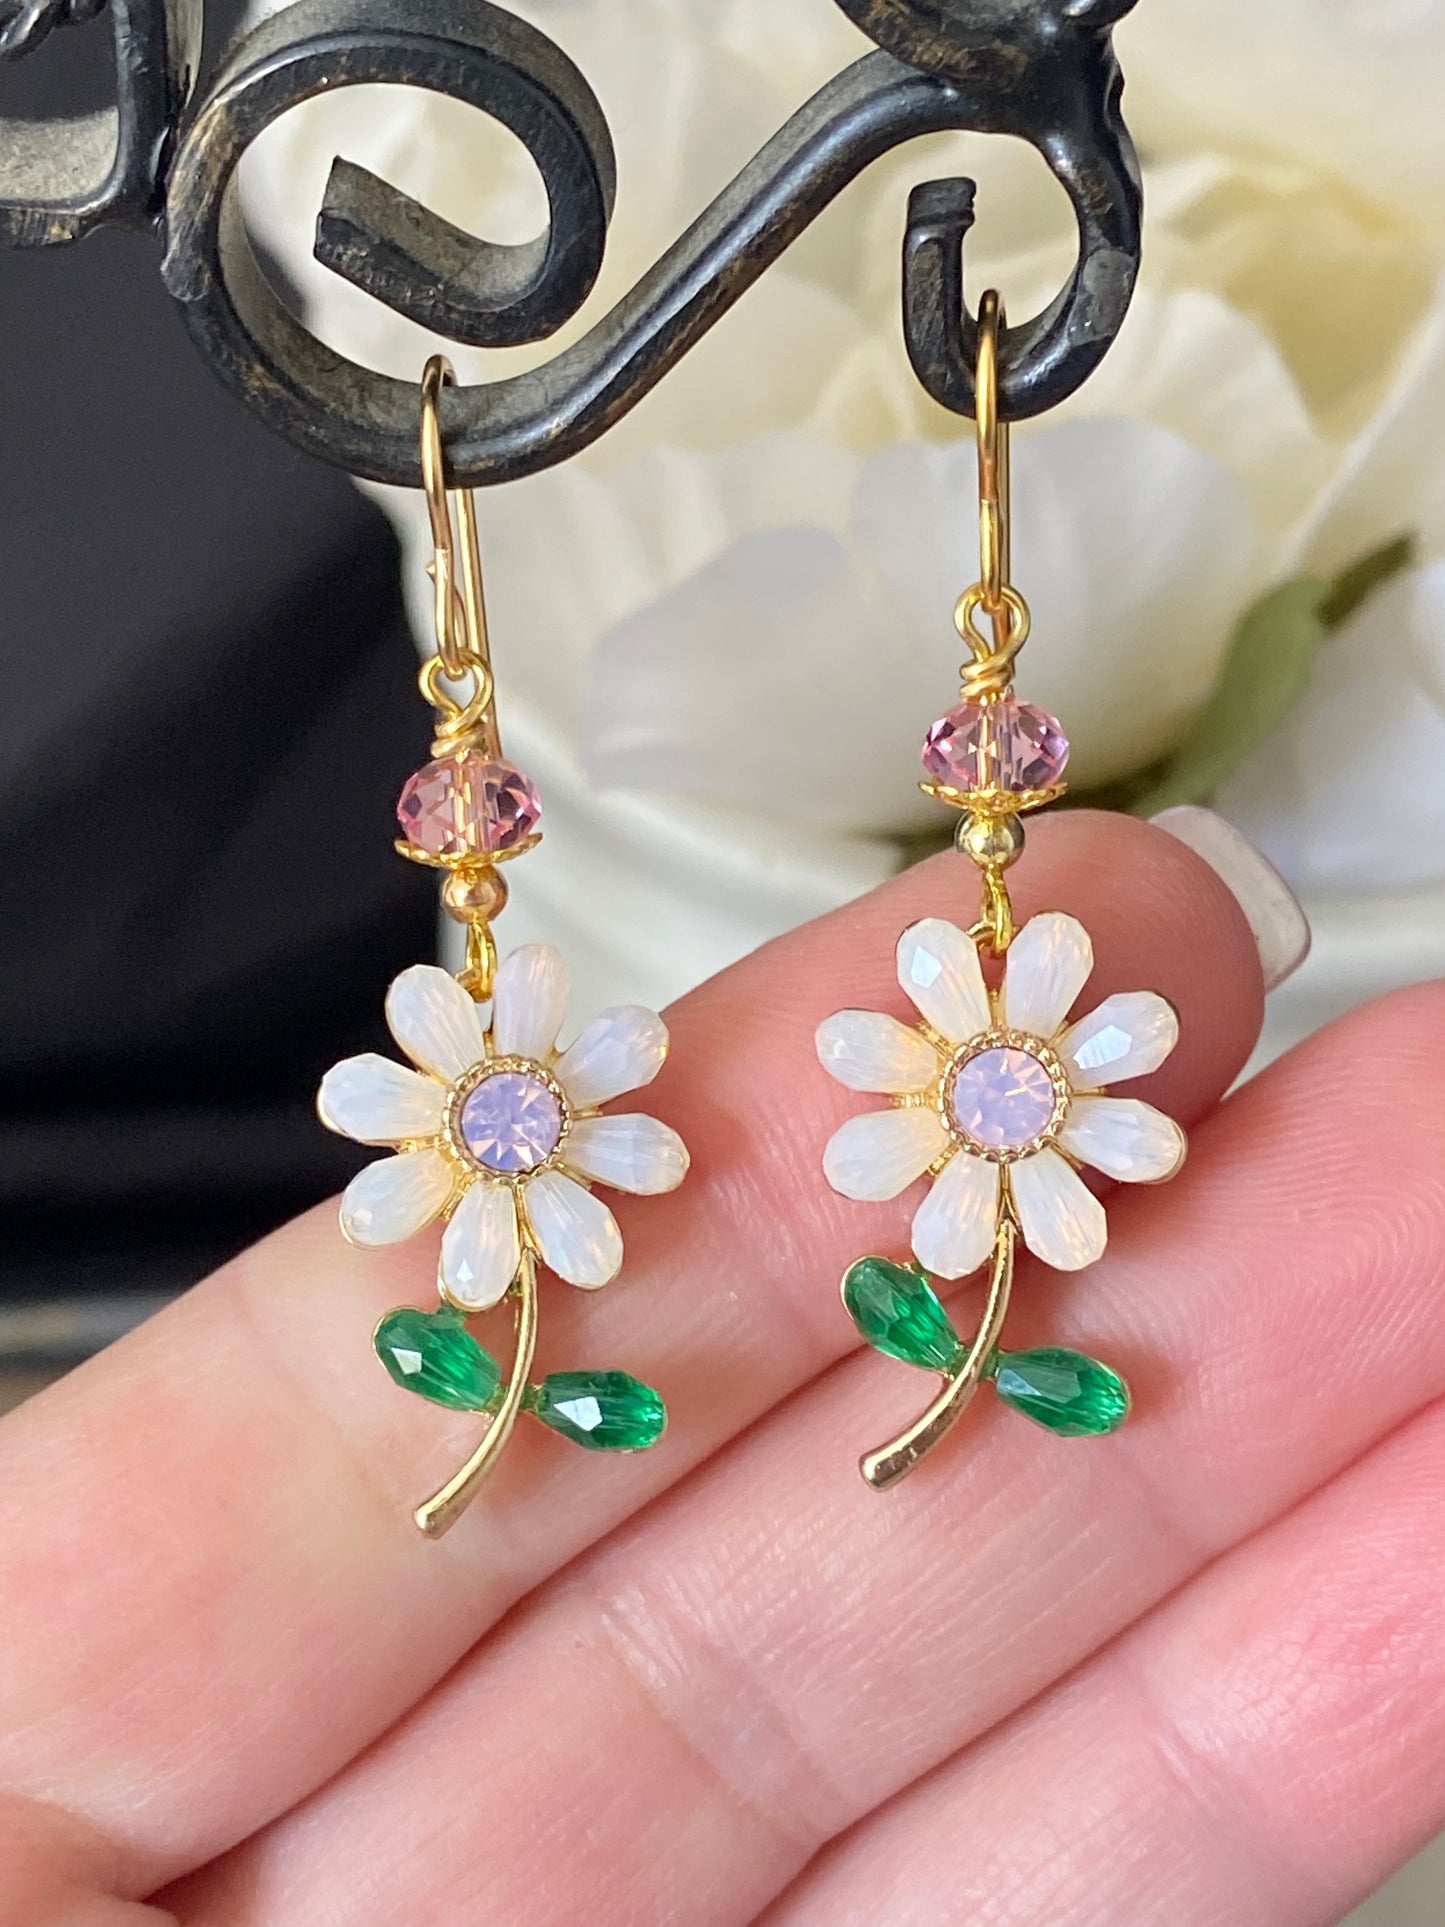 Pink crystal flowers, gold metal earrings, jewelry.